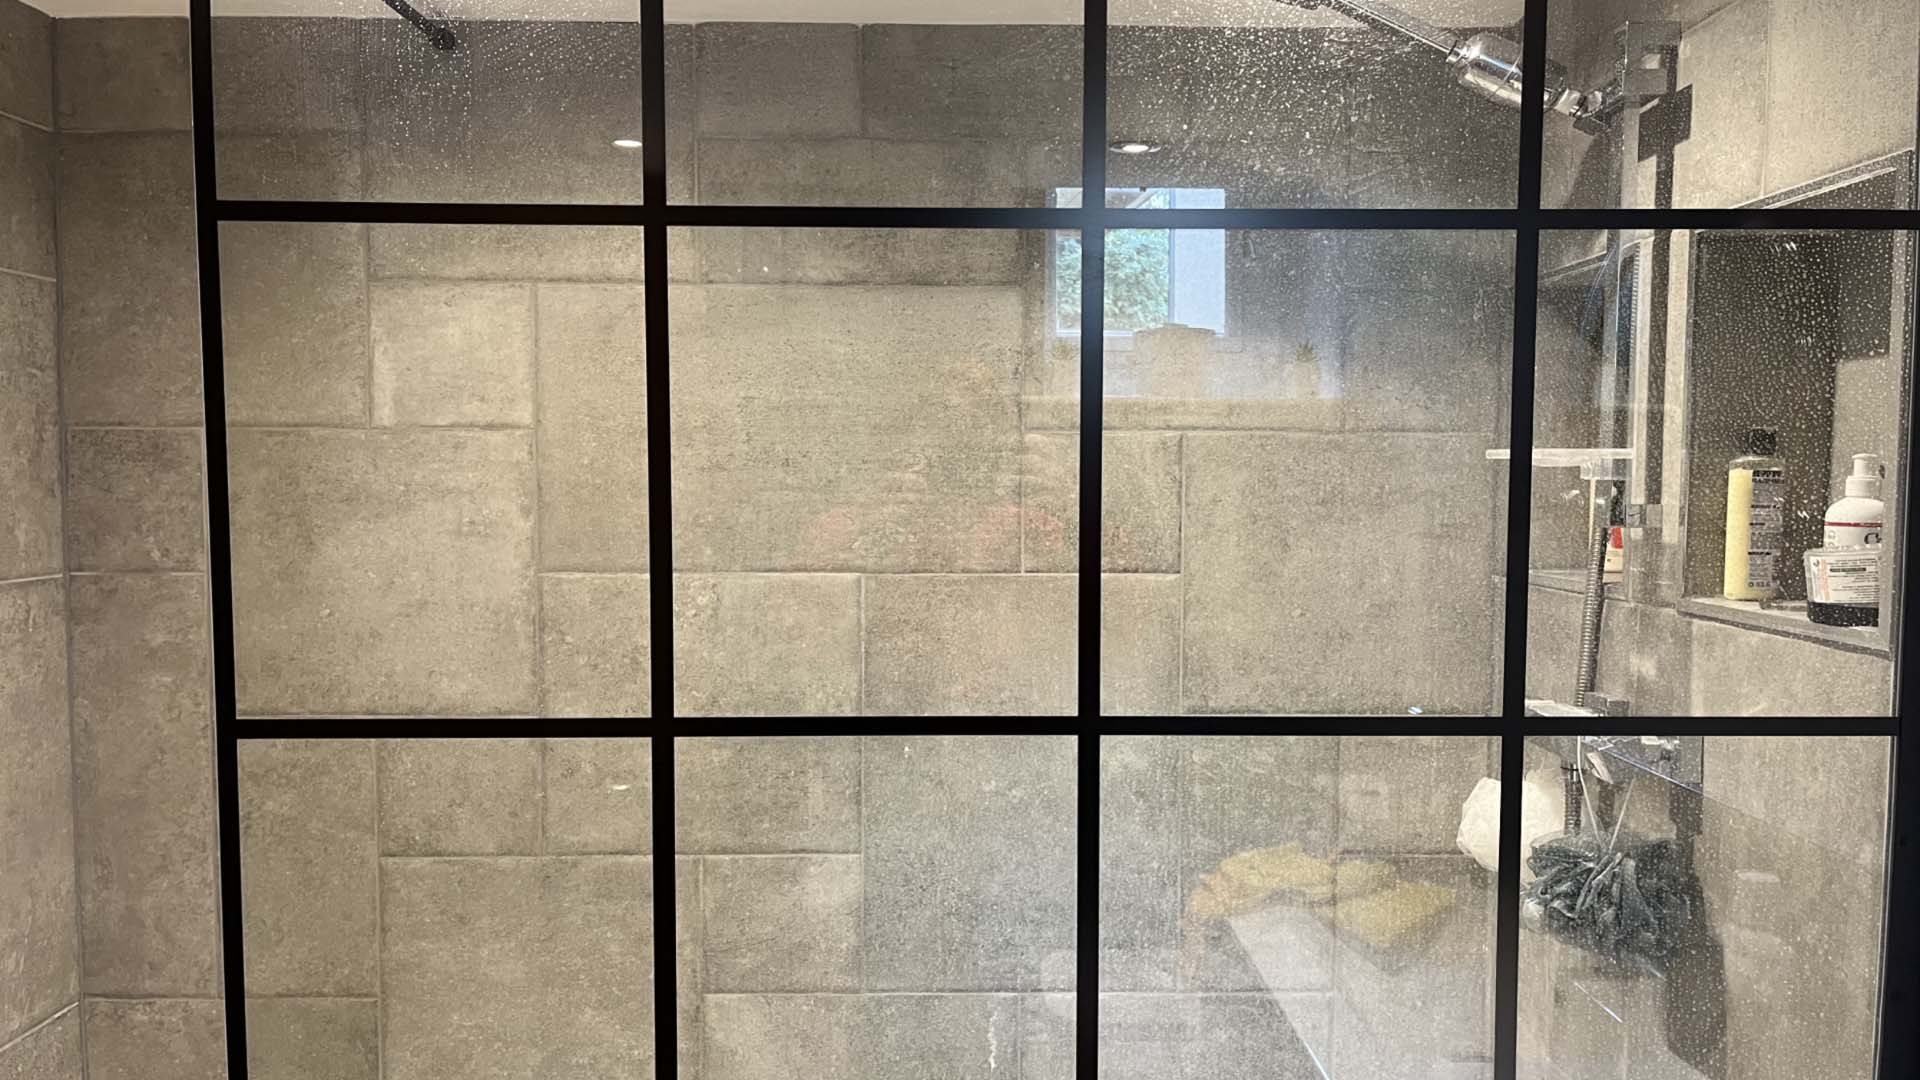 A dirty shower screen